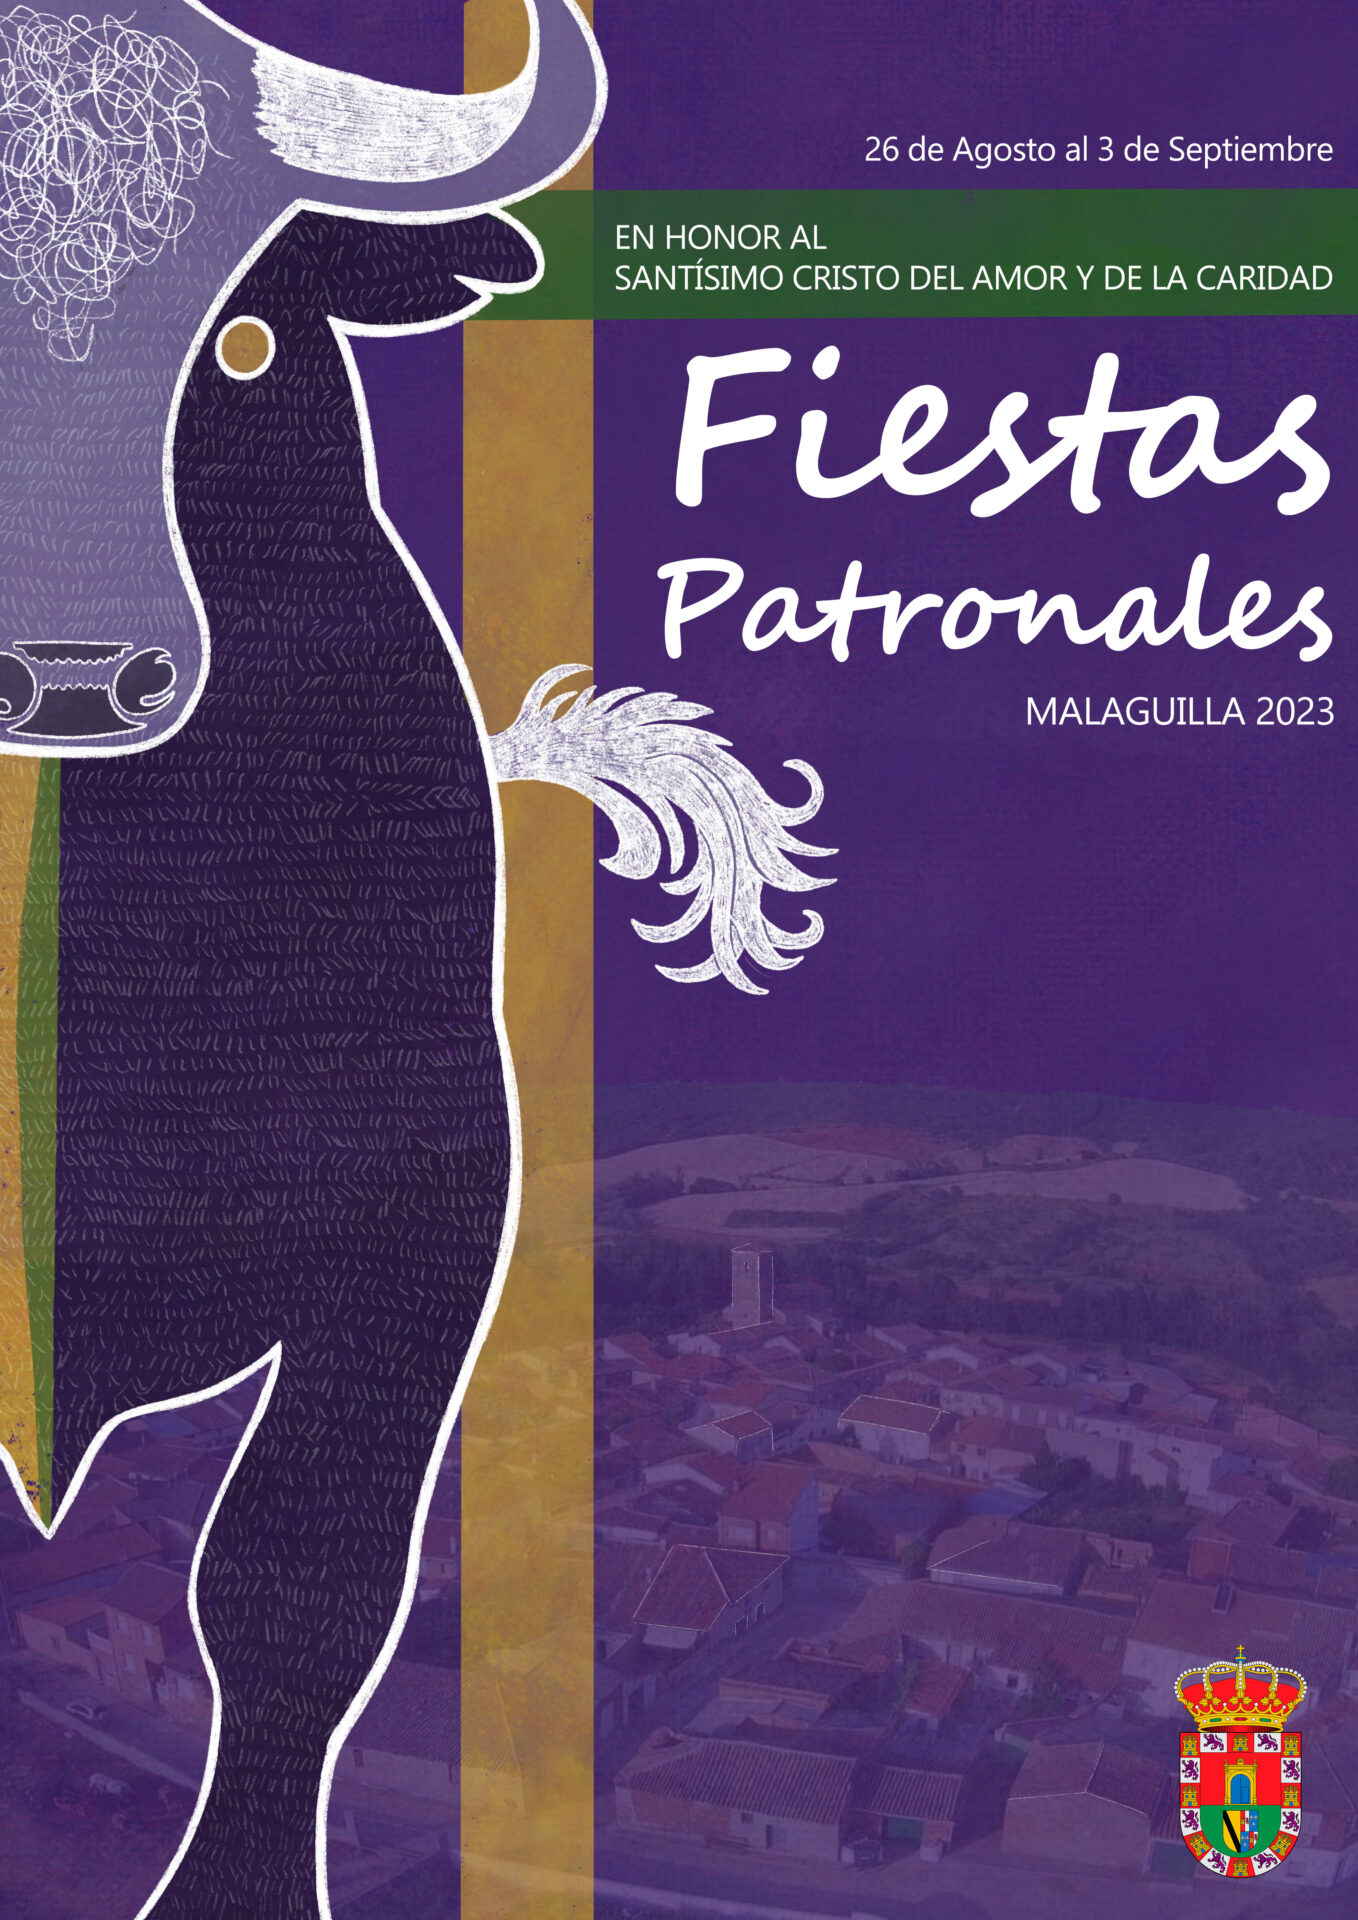 Fiestas Patronales Malaguilla